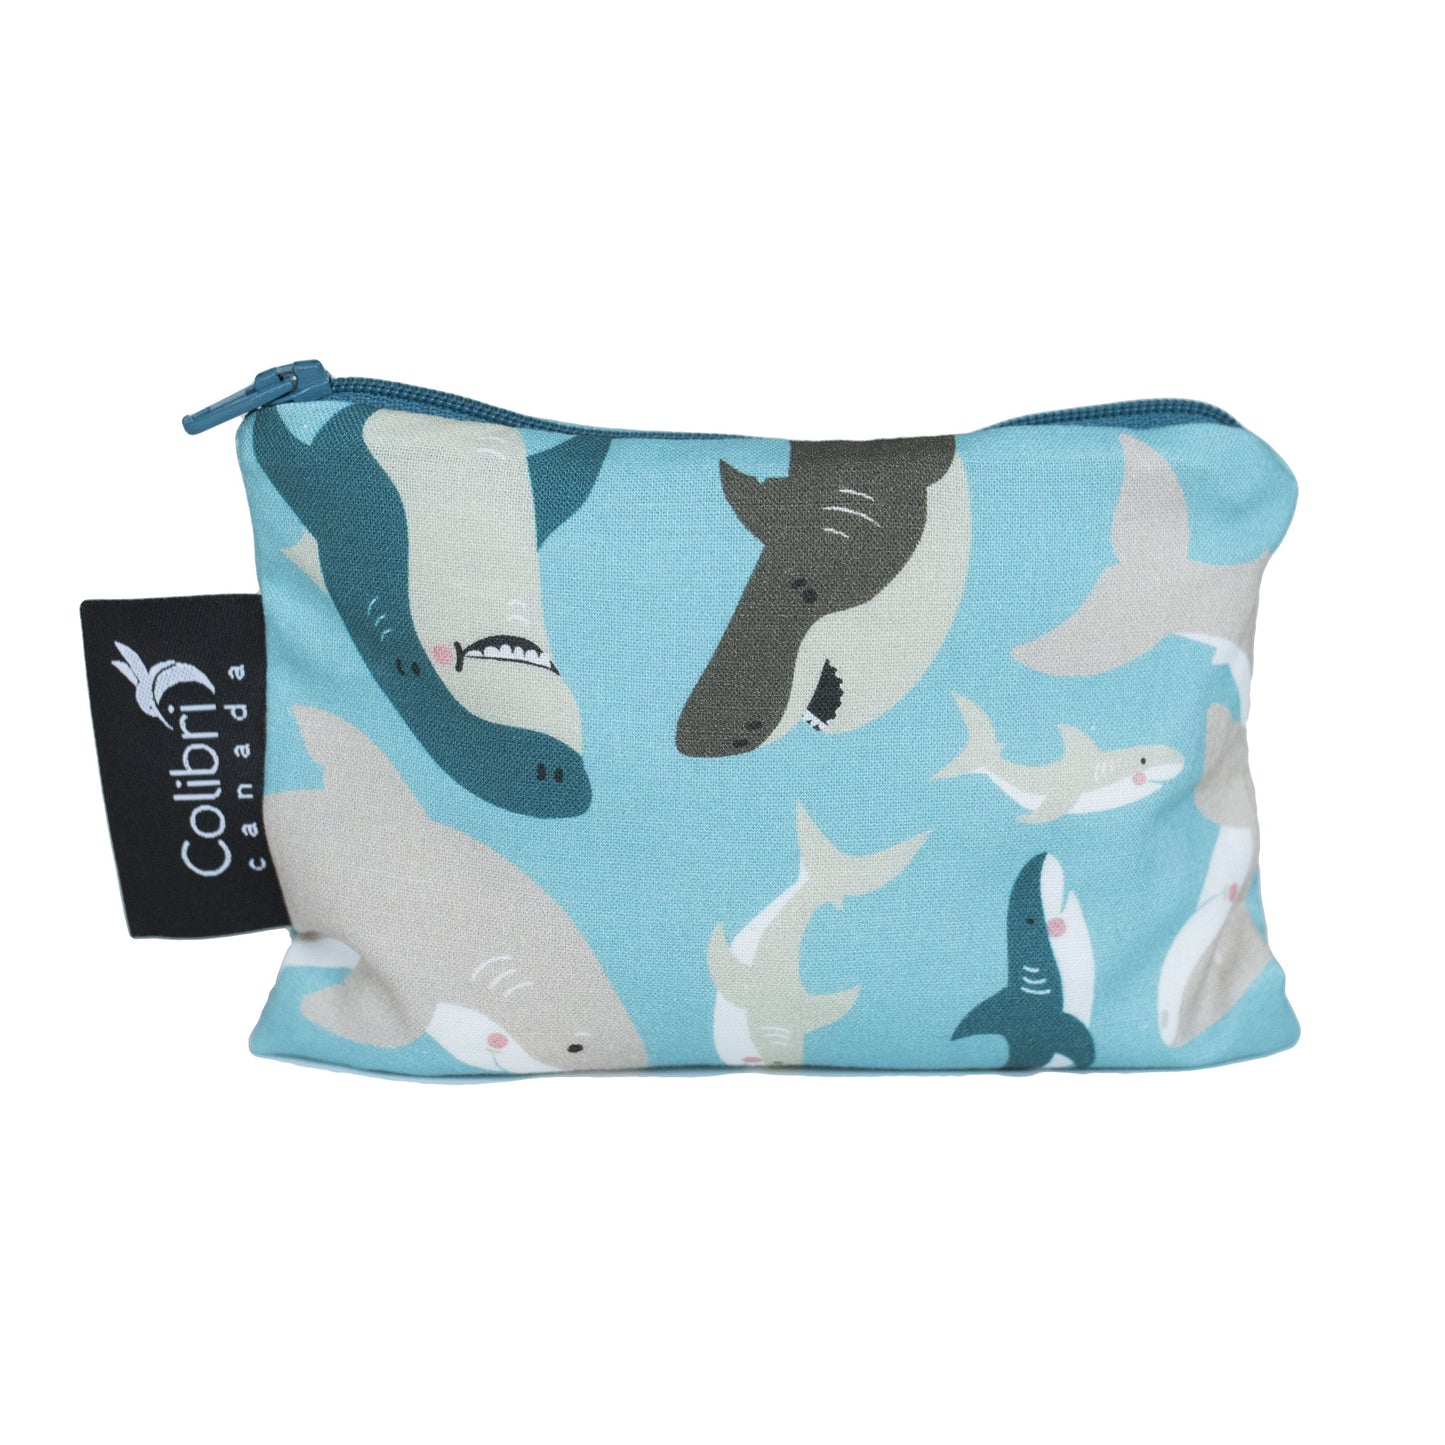 1098 - Sharks Reusable Snack Bag - Small